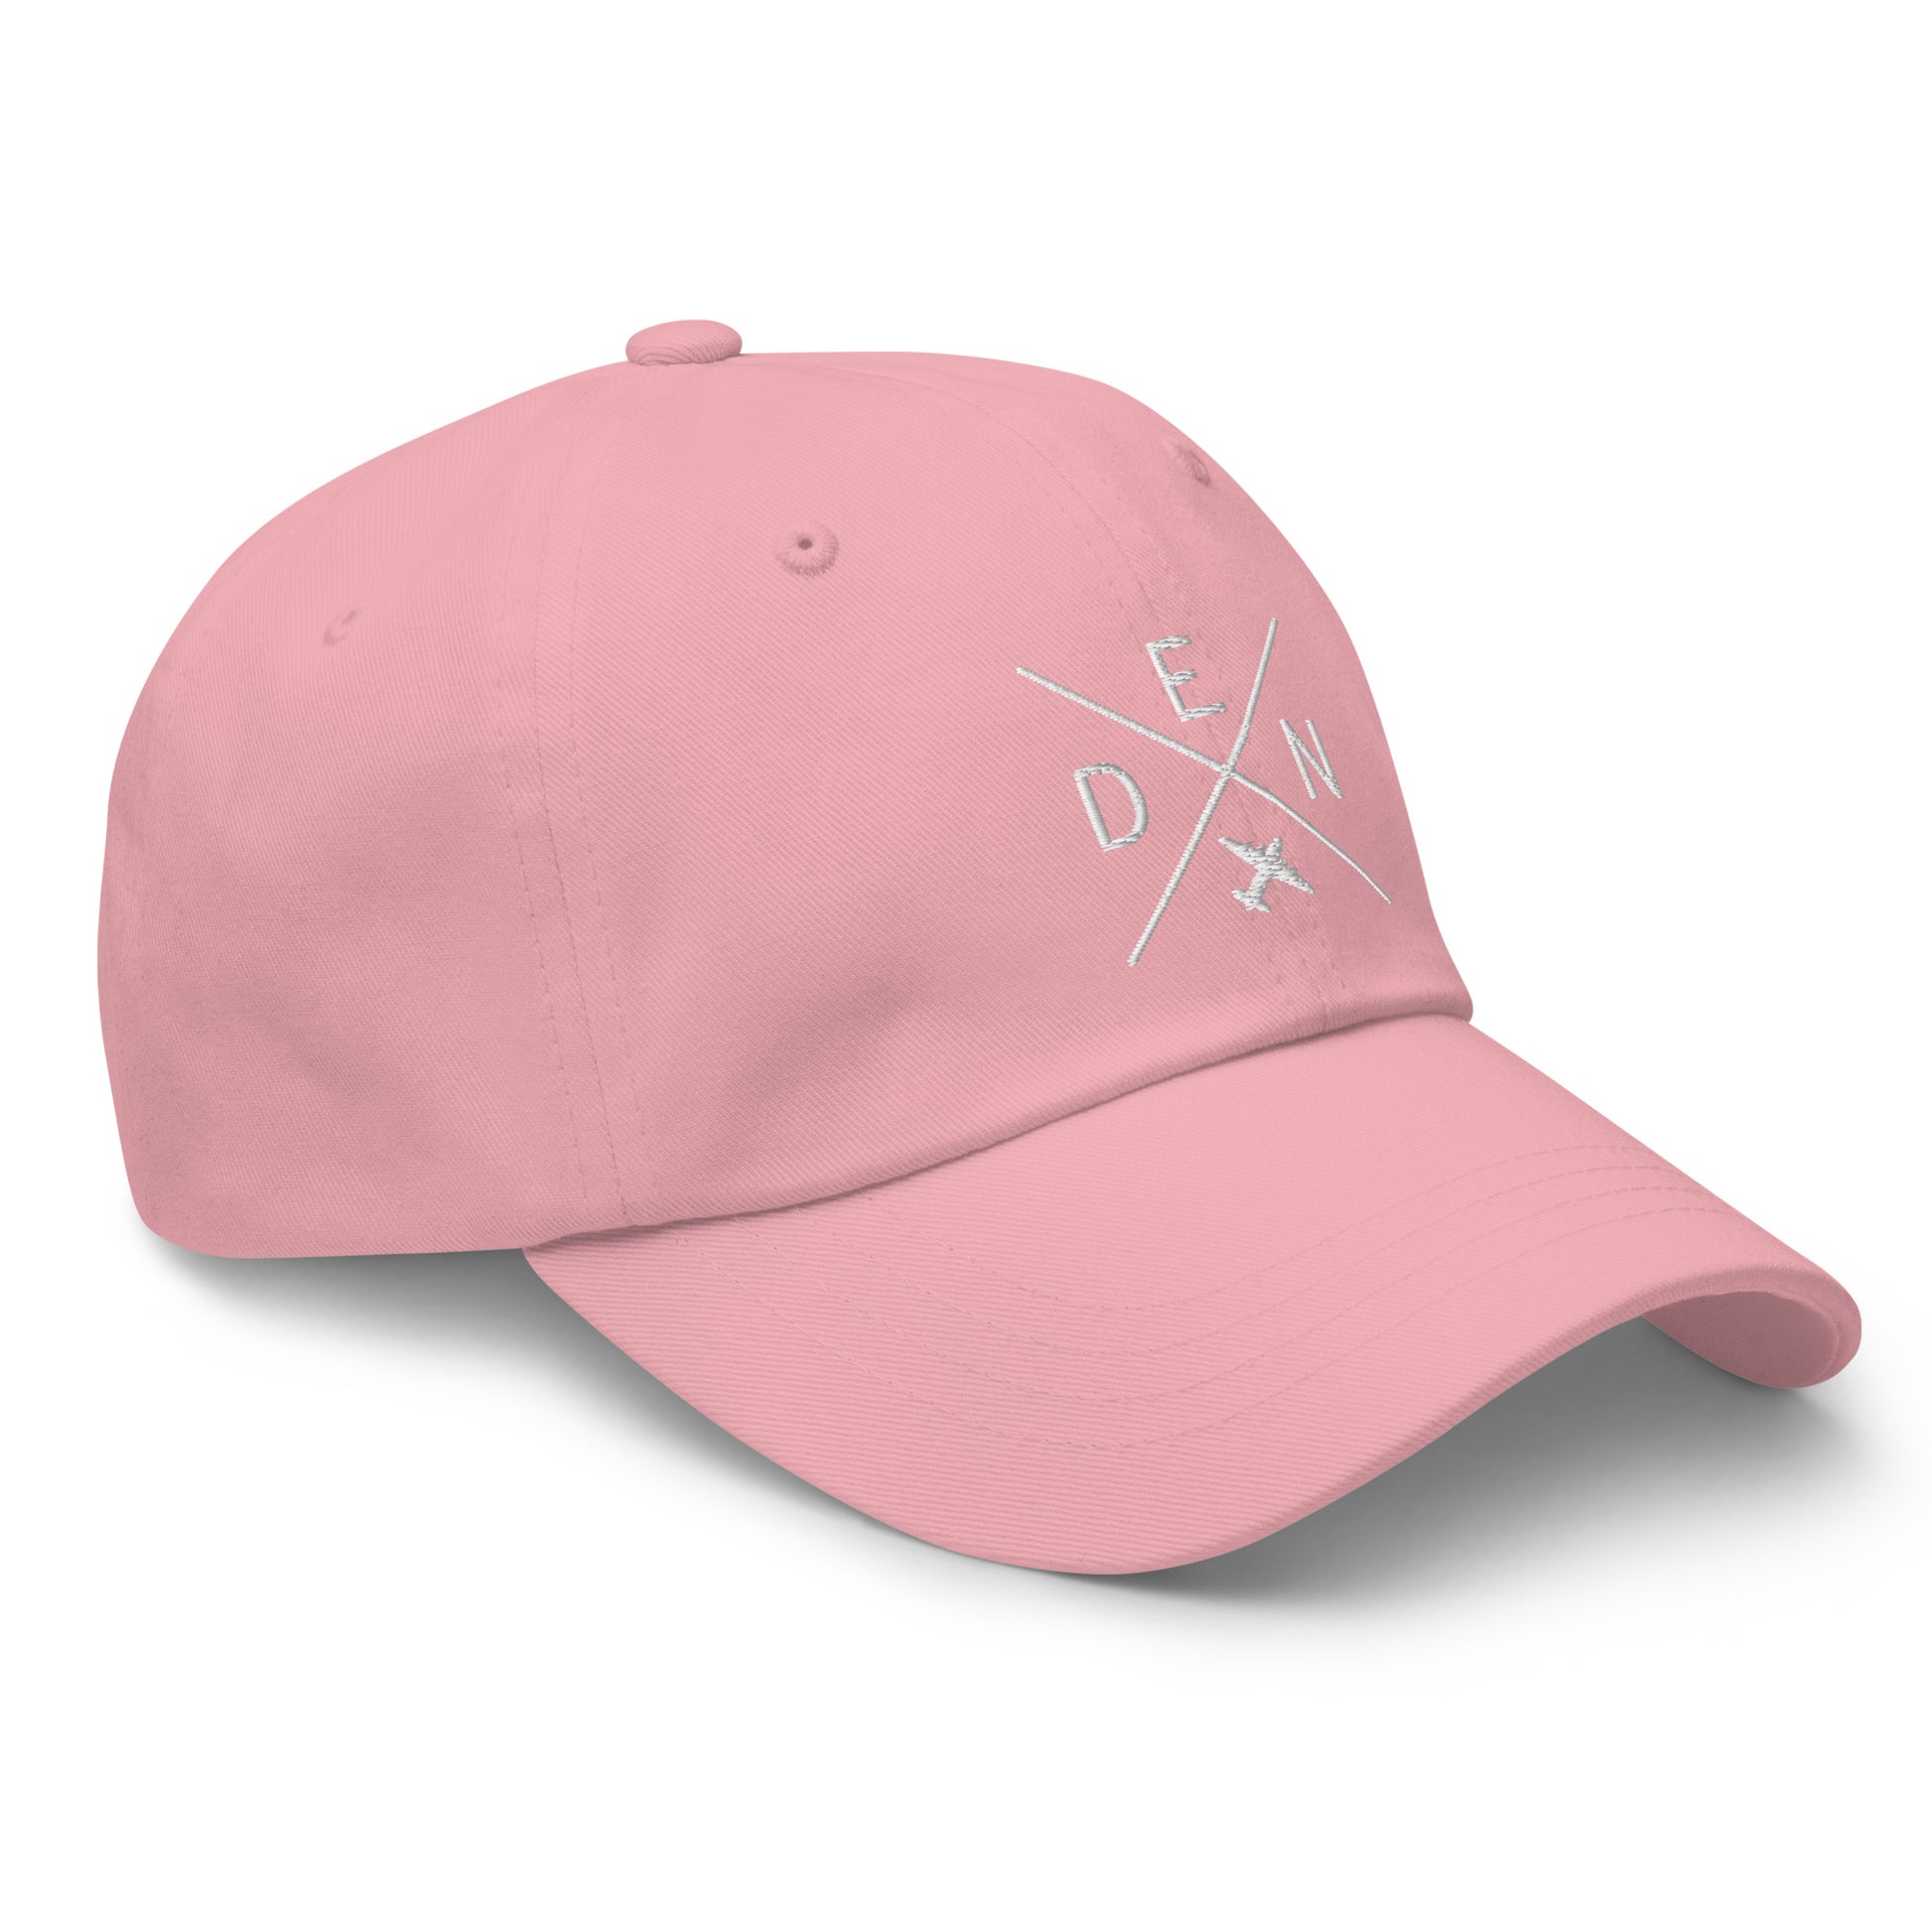 Crossed-X Dad Hat - White • DEN Denver • YHM Designs - Image 26